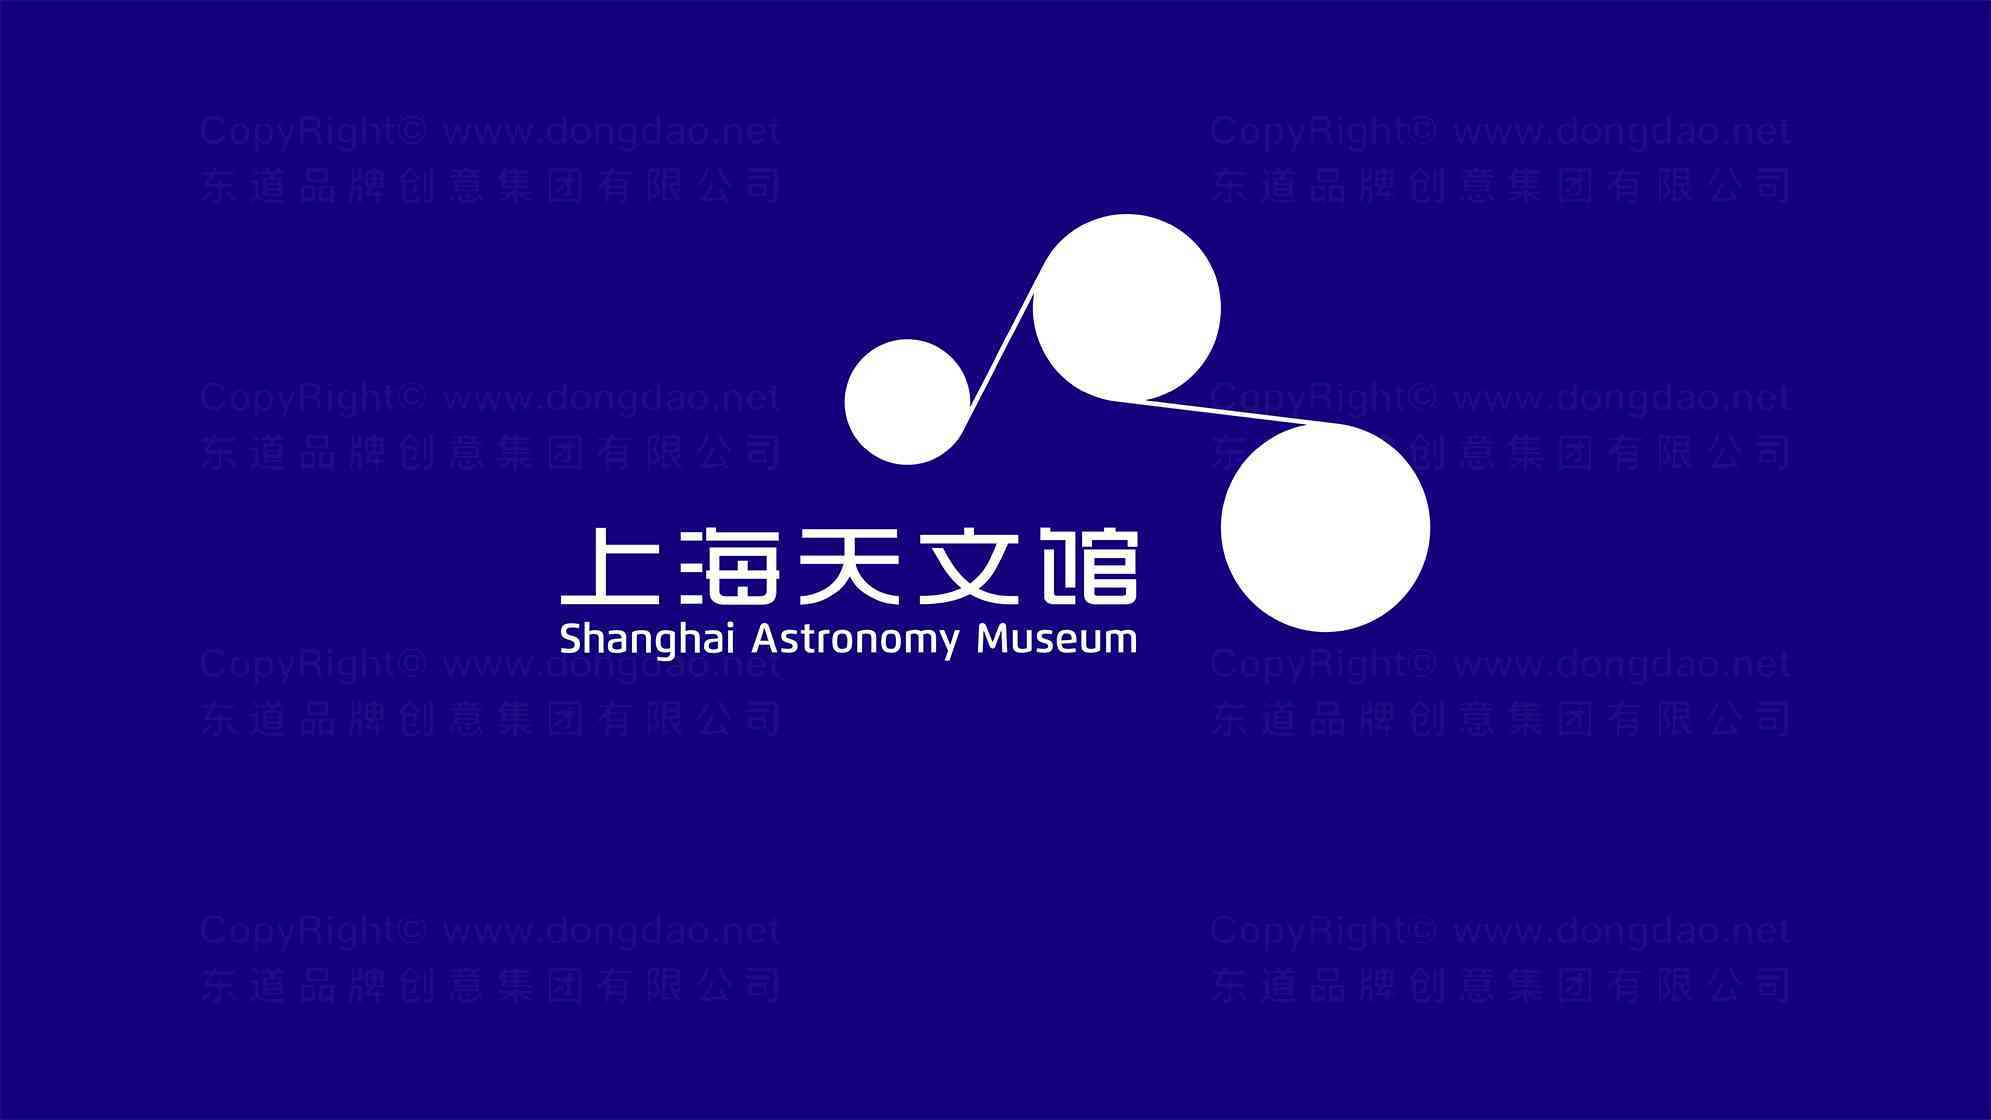 上海天文馆上海科技馆logo设计图片素材